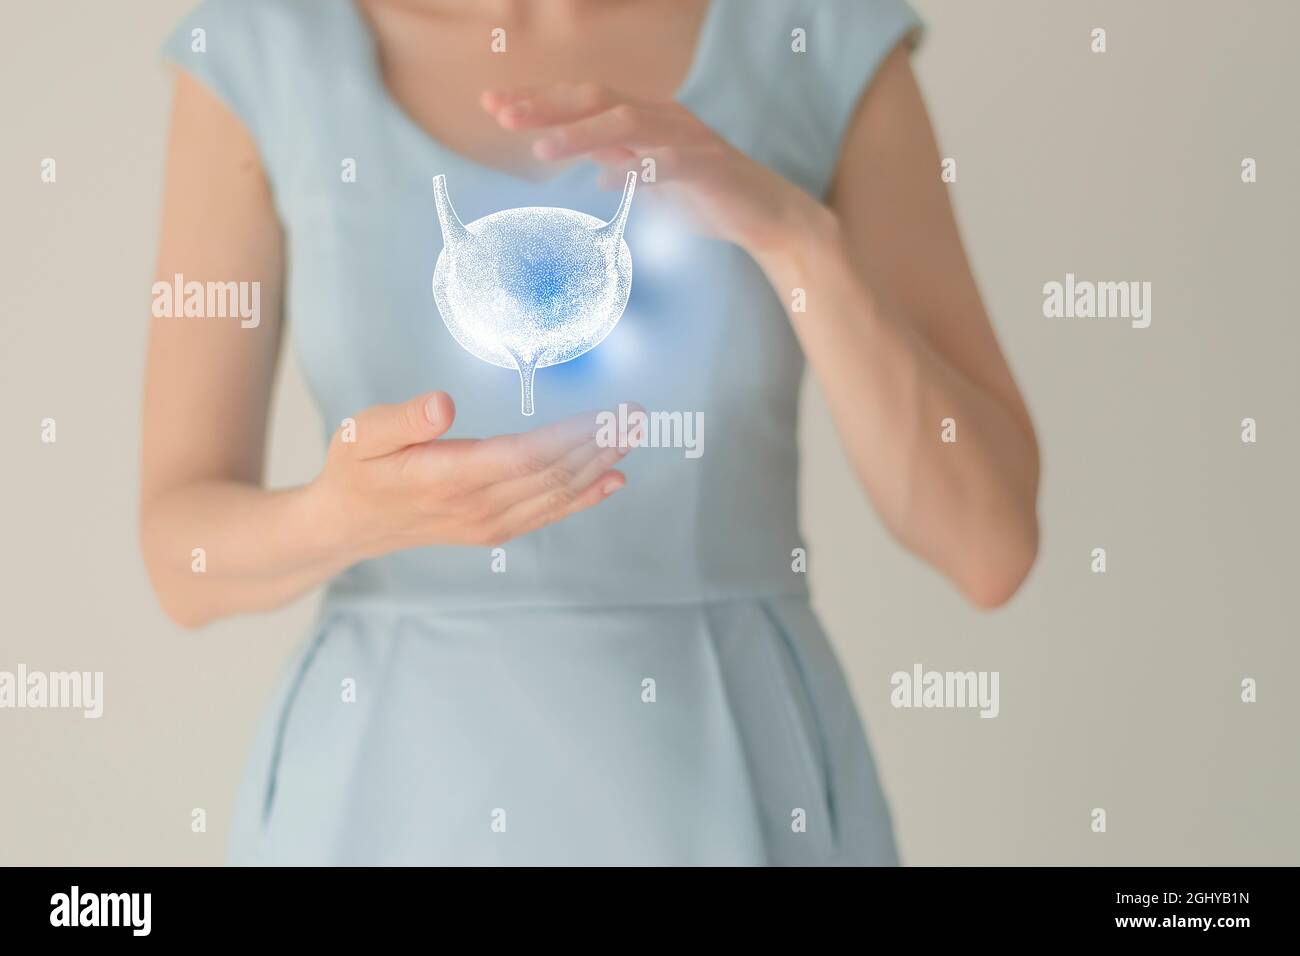 Nicht erkennbare Patientin in blauer Kleidung, hervorgehobene handgezogene Blase in den Händen. Das menschliche Nierensystem stellt ein Konzept dar. Stockfoto